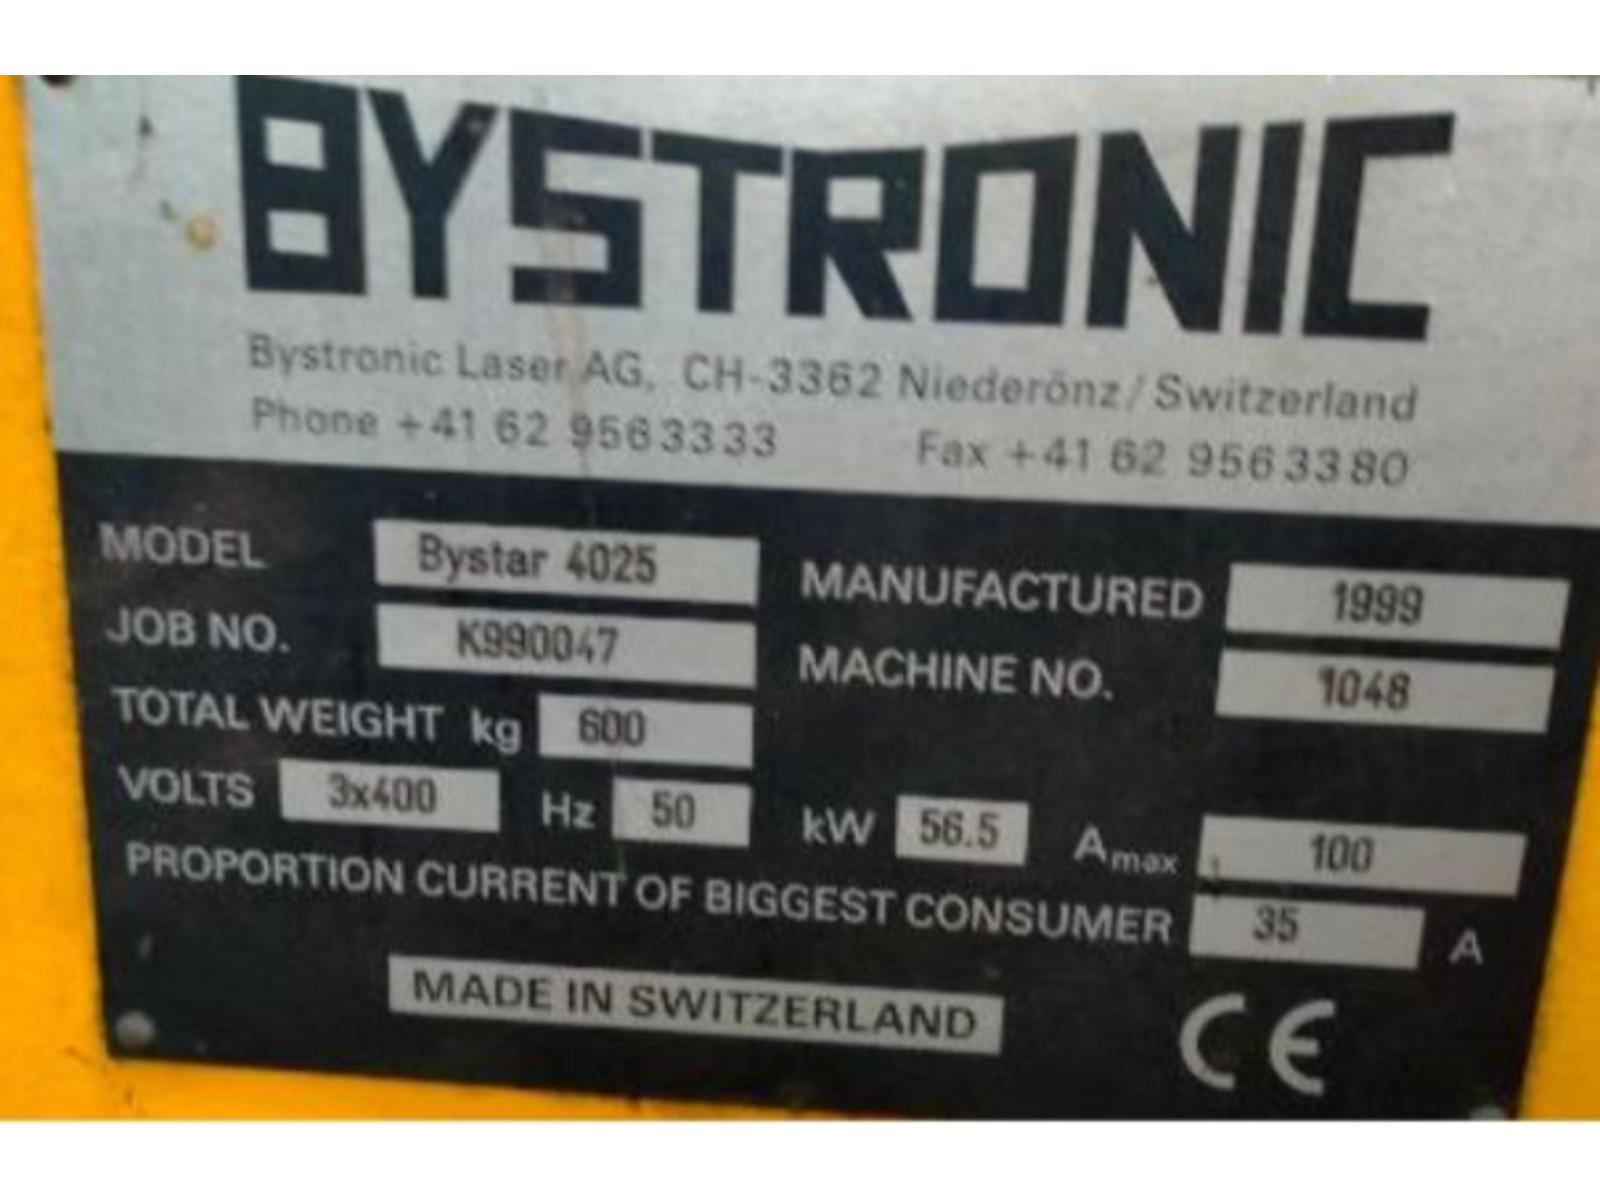 Laser Bystronic Modello BTL 3500